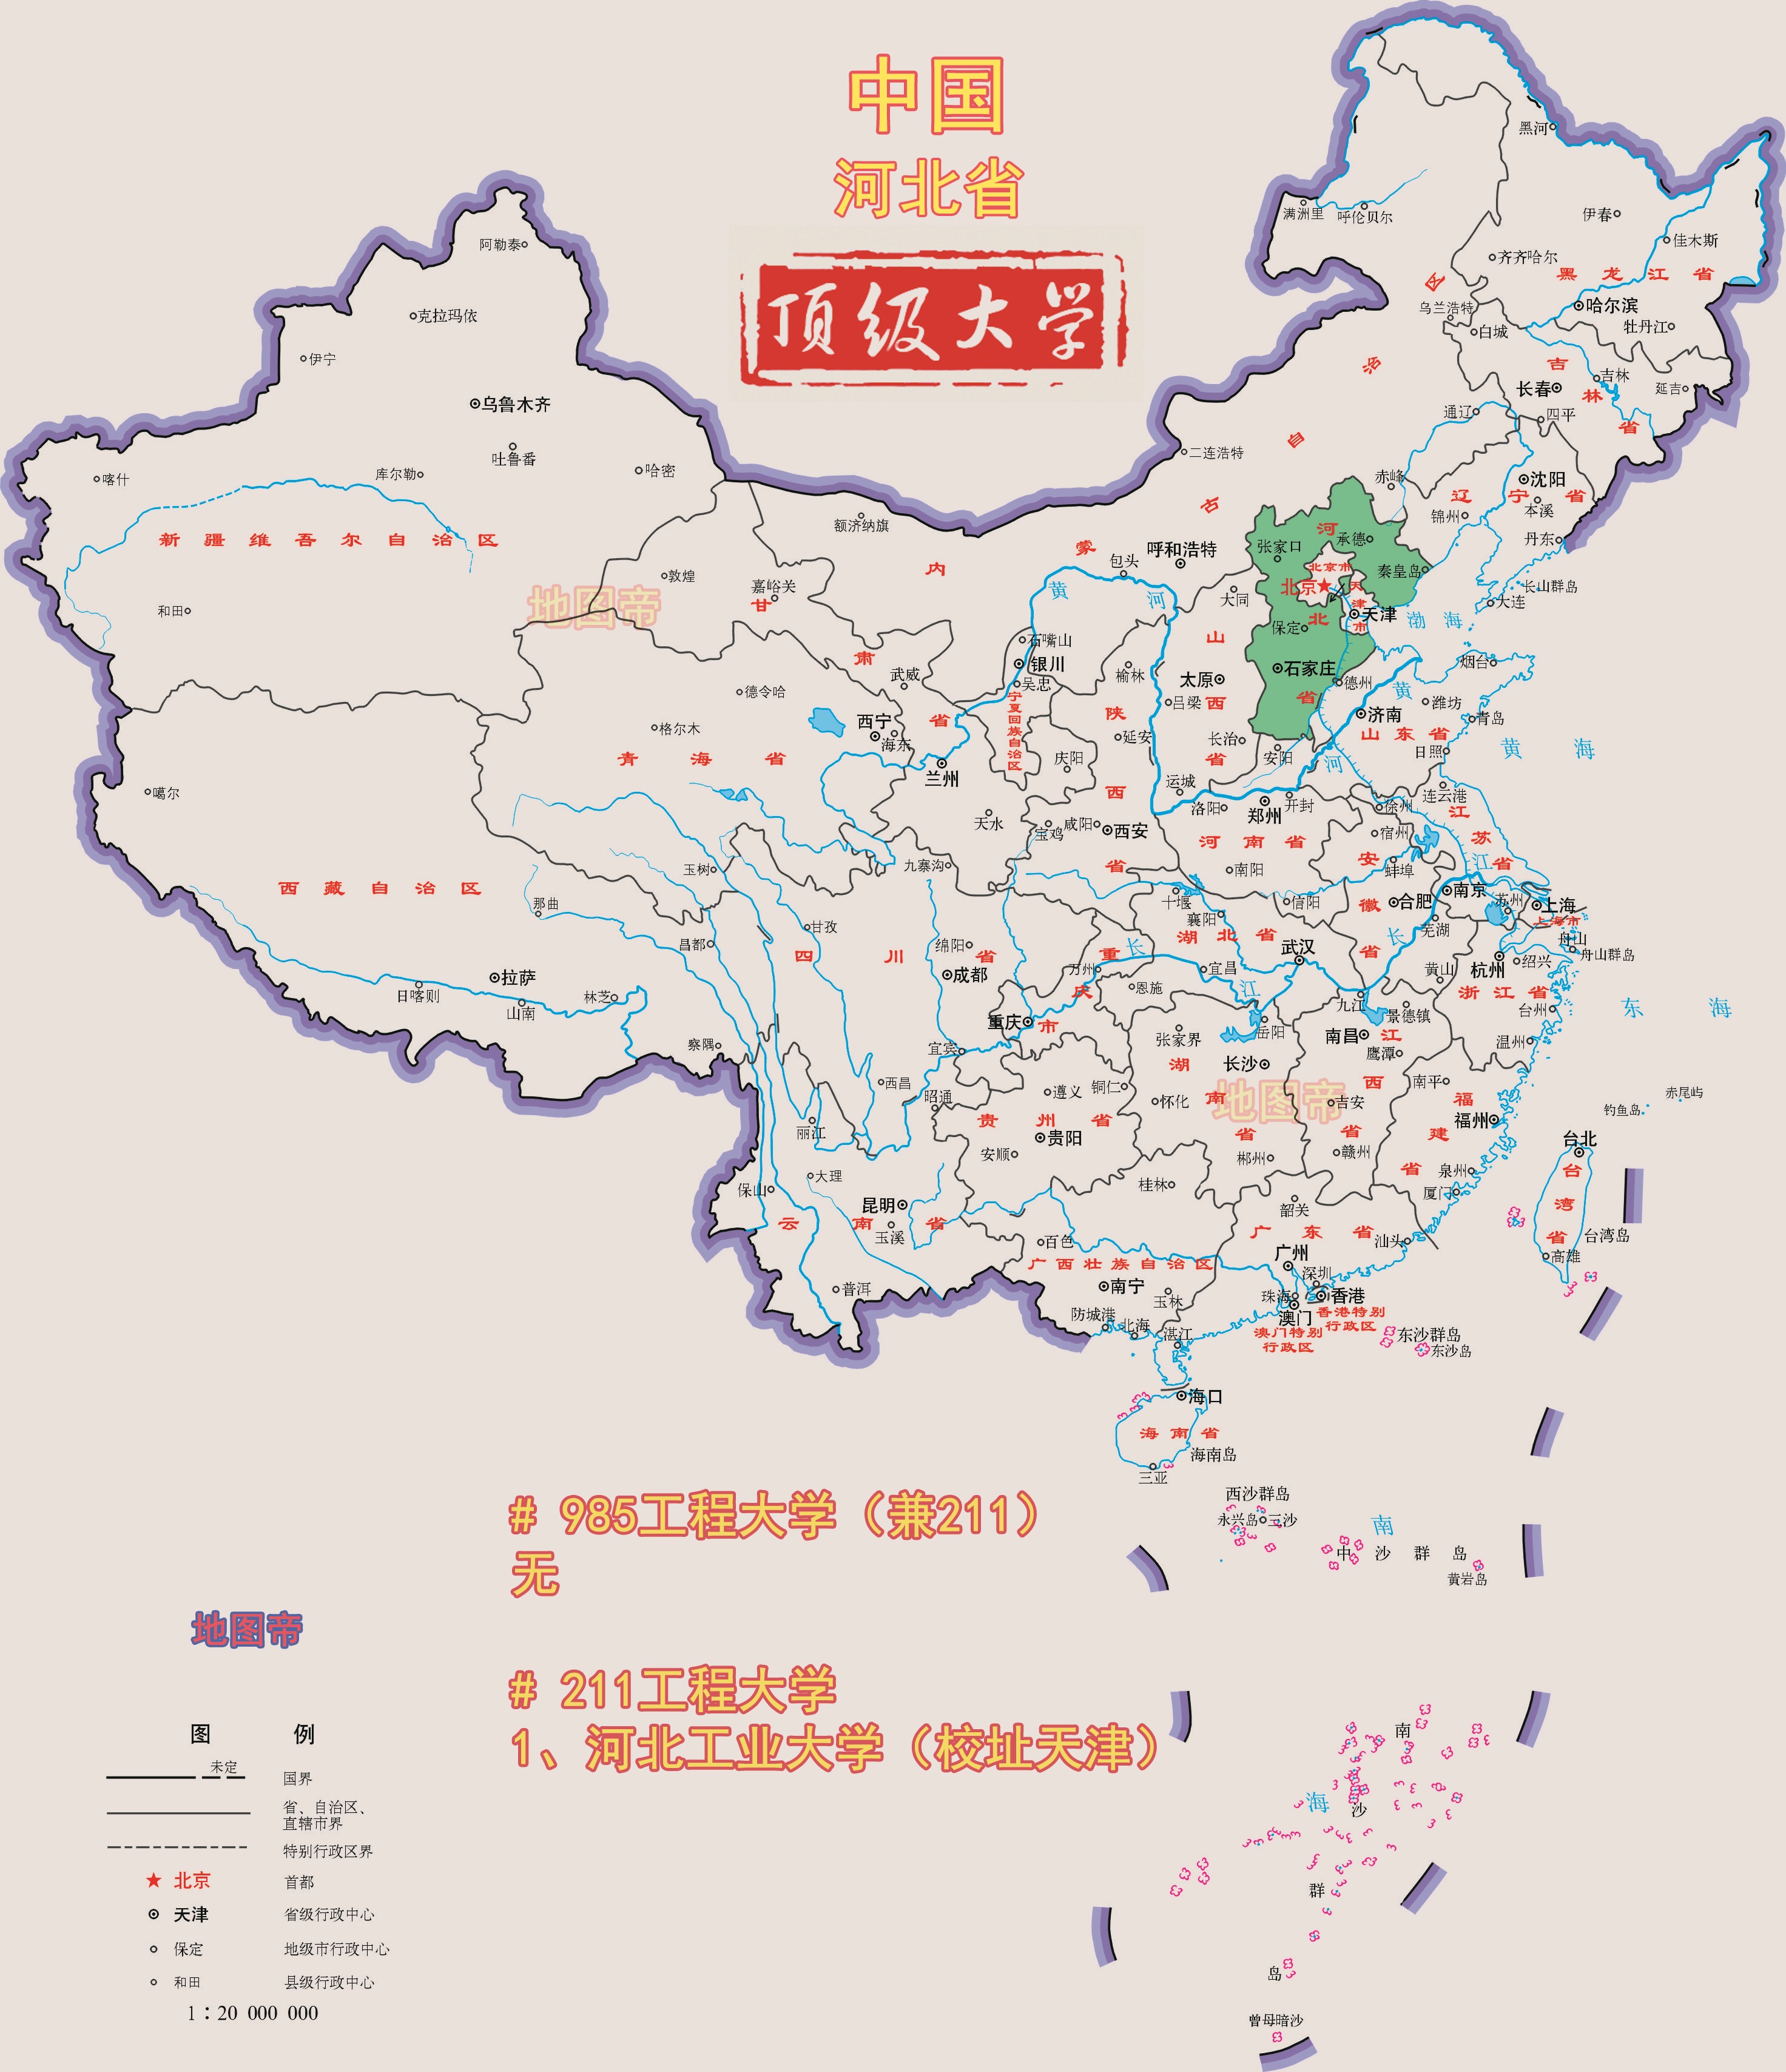 河南省特别好的高等教育资源略显薄弱,没有985工程高校,只有一所211